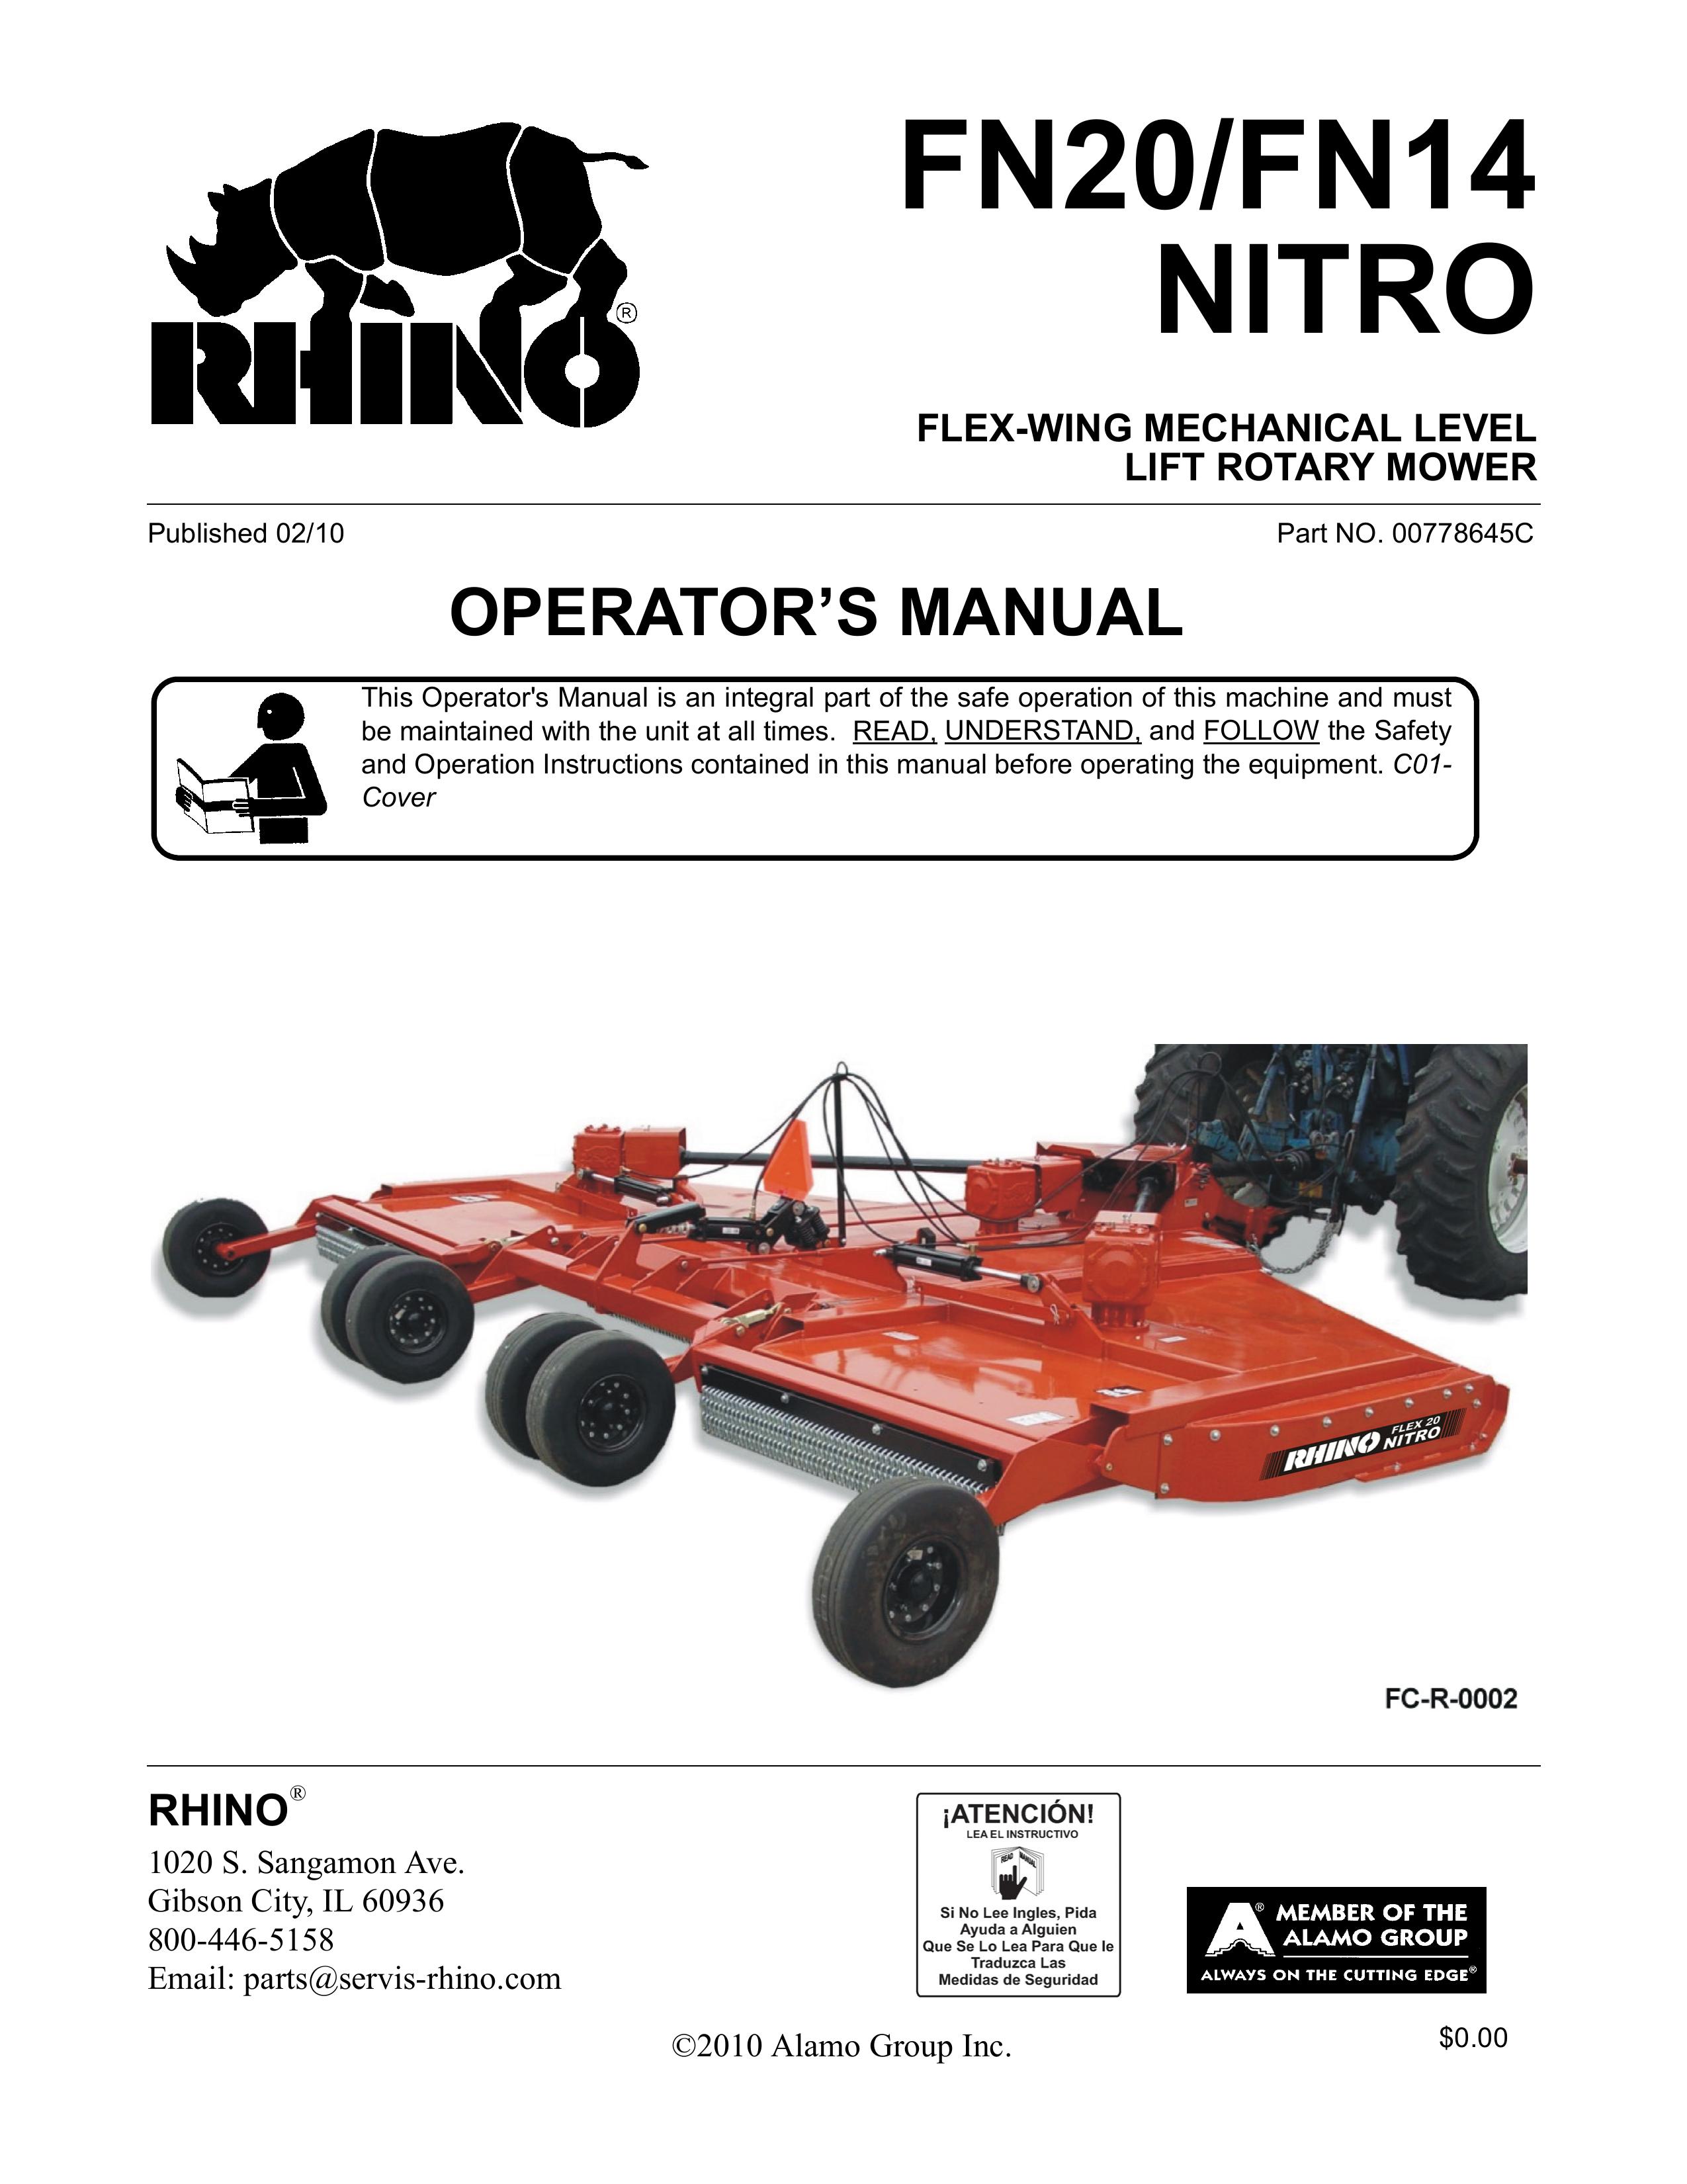 Rhino Mounts FN20 Lawn Mower User Manual